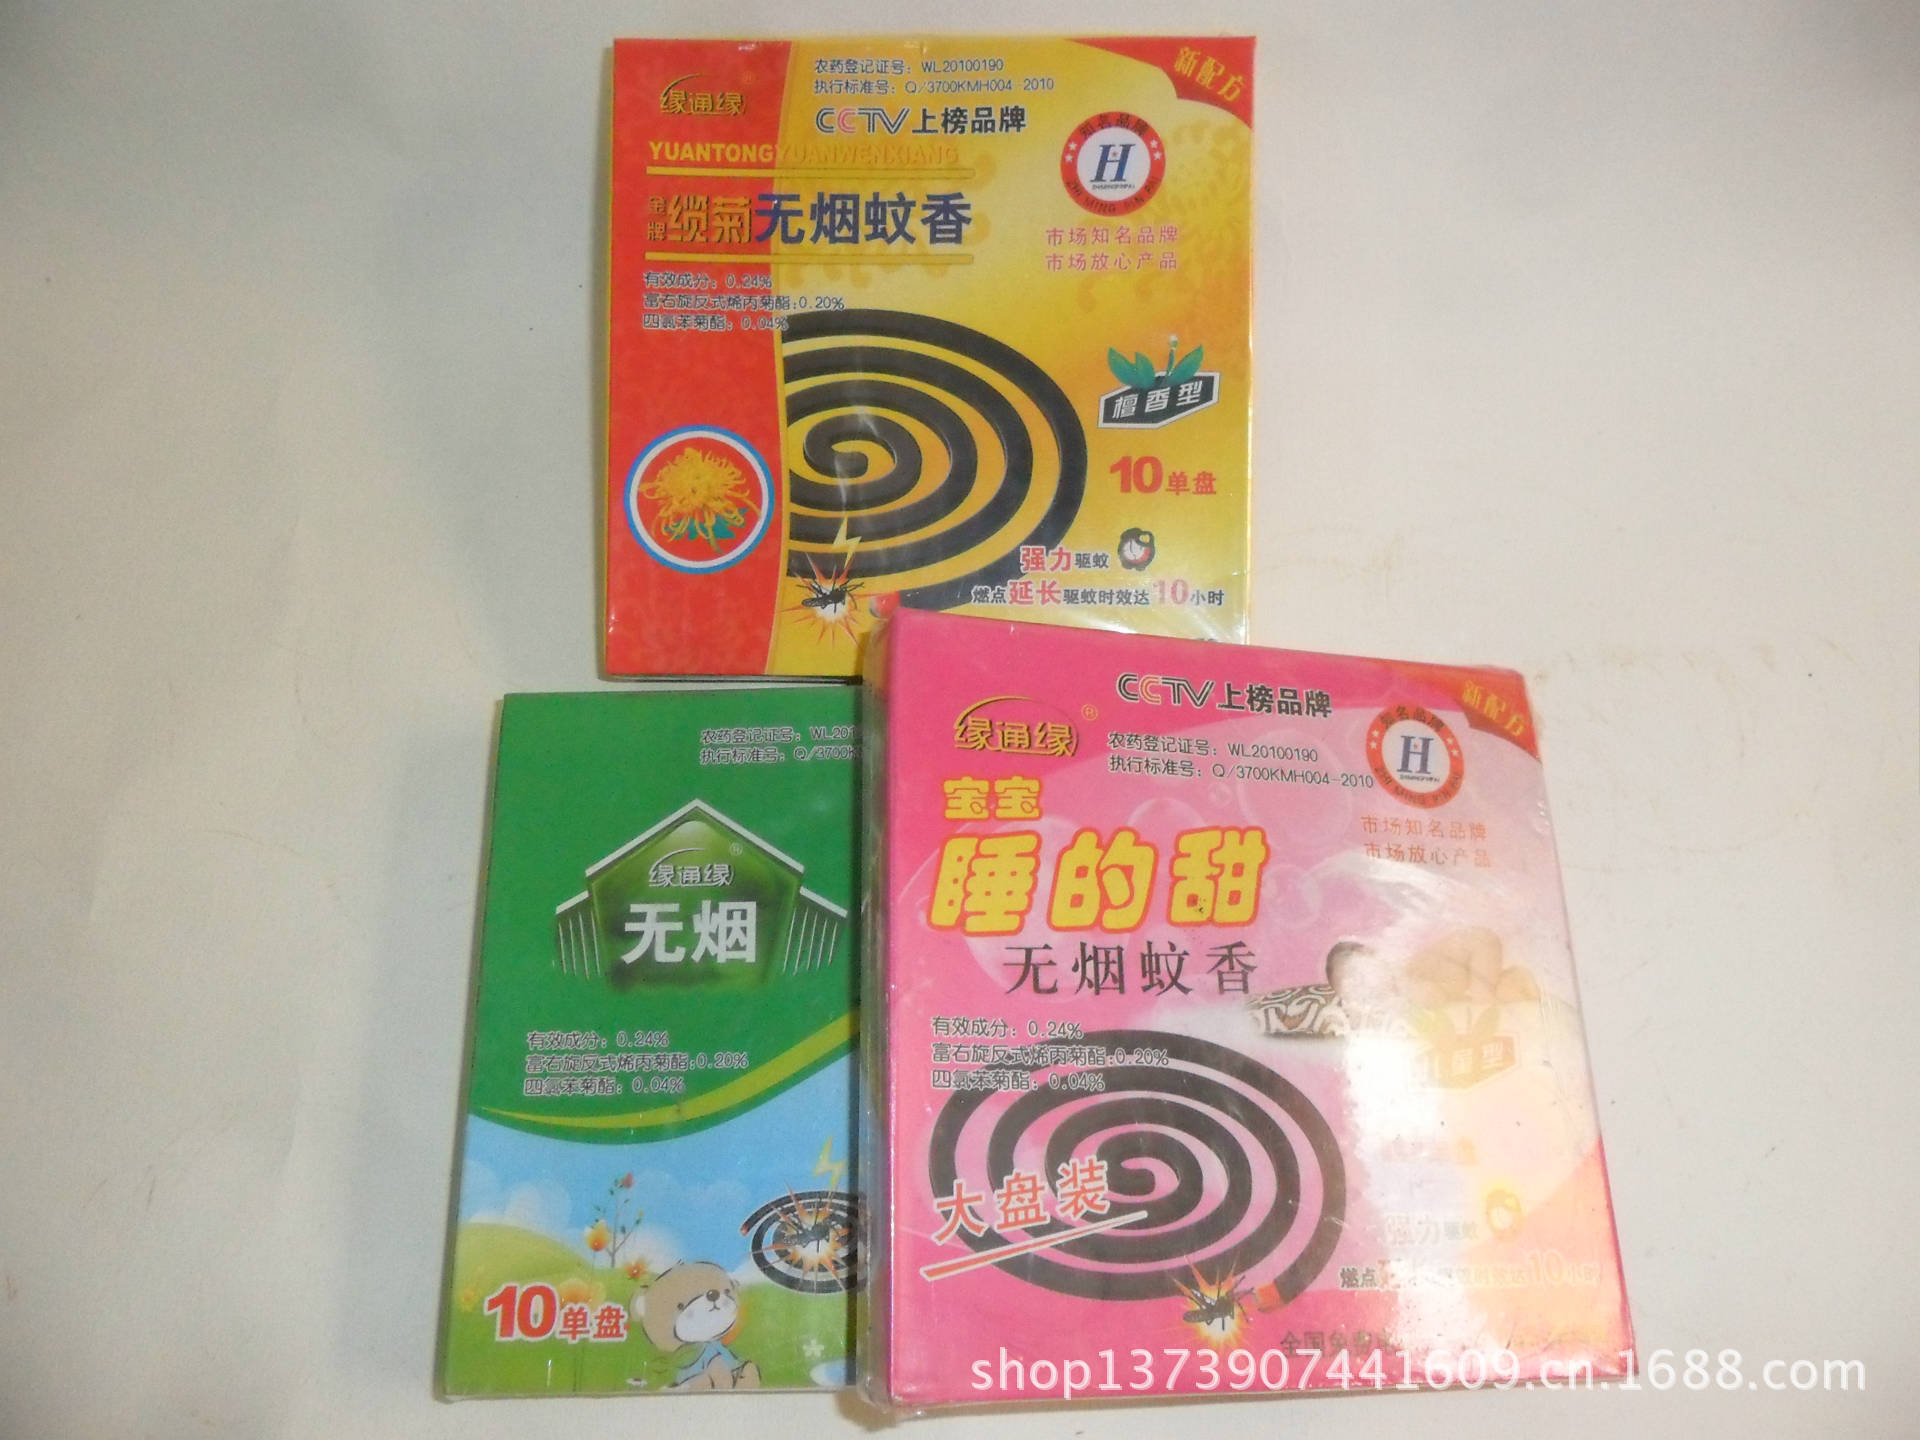 张庆(个体经营)主营:各种品牌洗发水(海潘飘),花露水,杀虫剂,蚊香,蝇